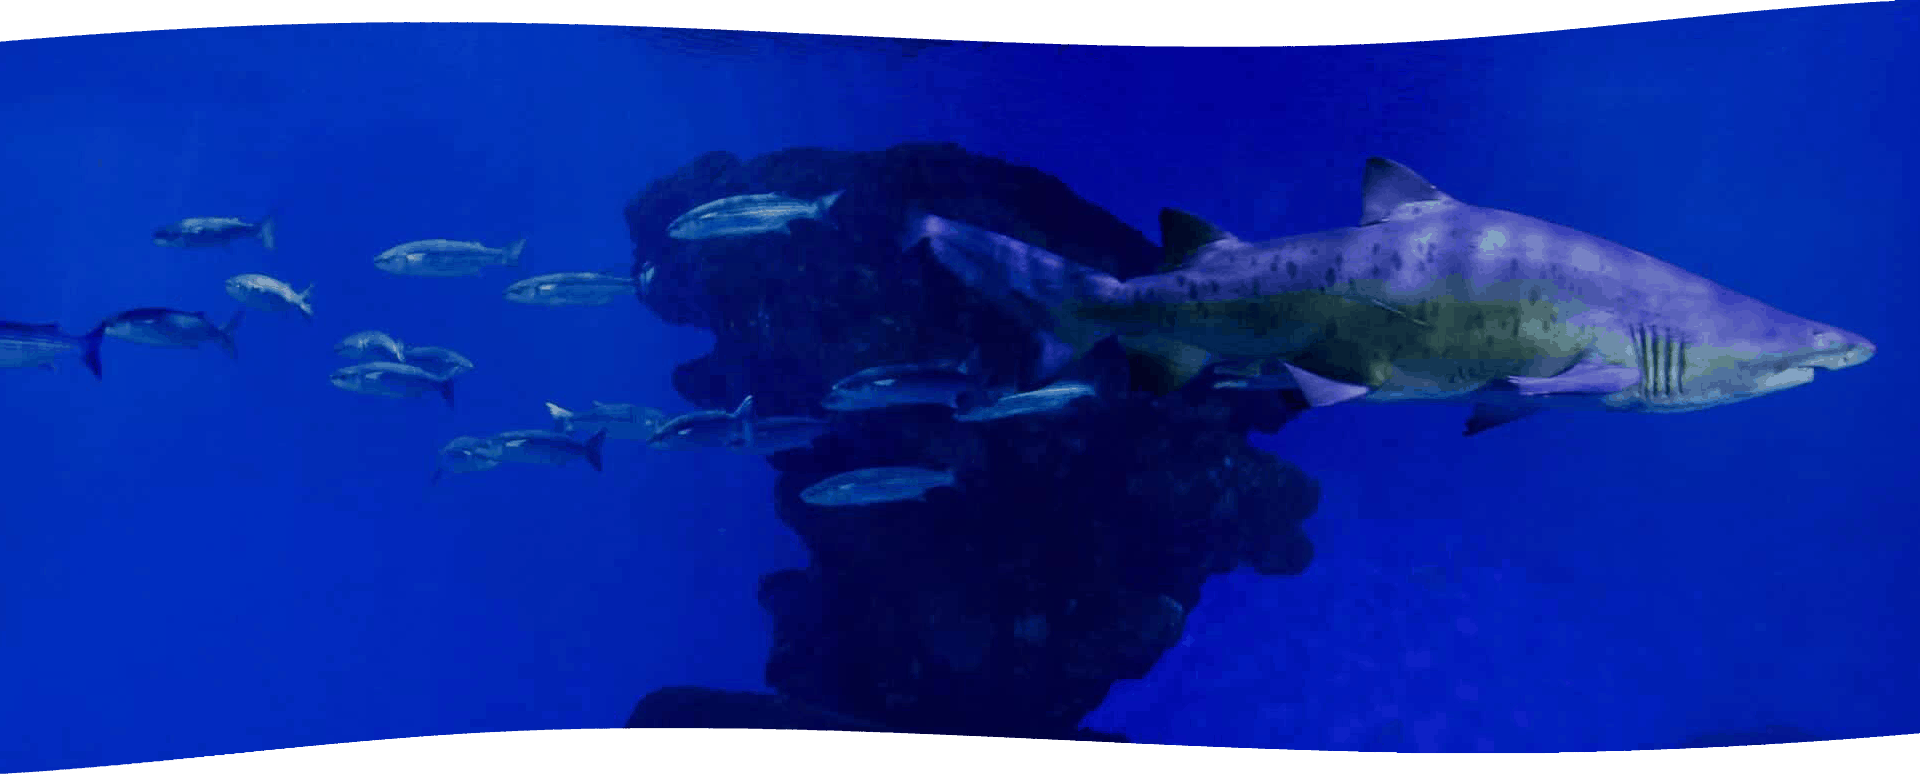 Big Blue - Palma Aquarium